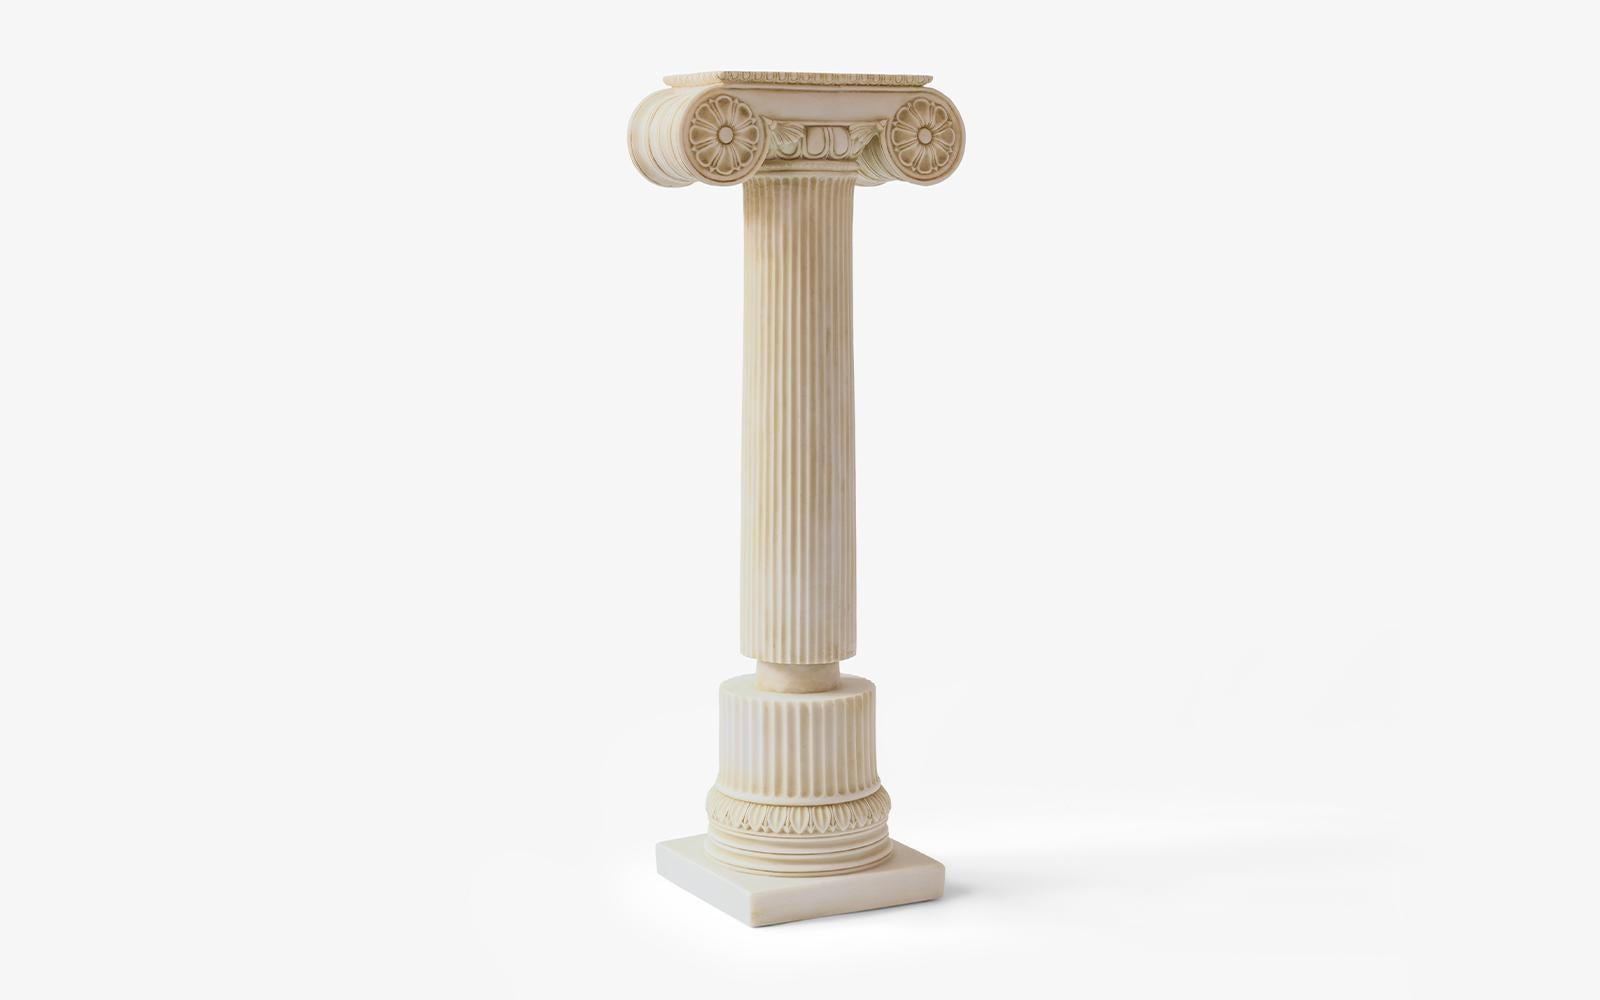 Gewicht: 7,5 kg
Die ionischen Säulen, die an der West- und Südküste Anatoliens entstanden, haben eine schlanke, lange und elegante Form.

Die spezielle Auswahl von agu bringt die bedeutendsten Skulpturen der Weltgeschichte mit den besten Materialien